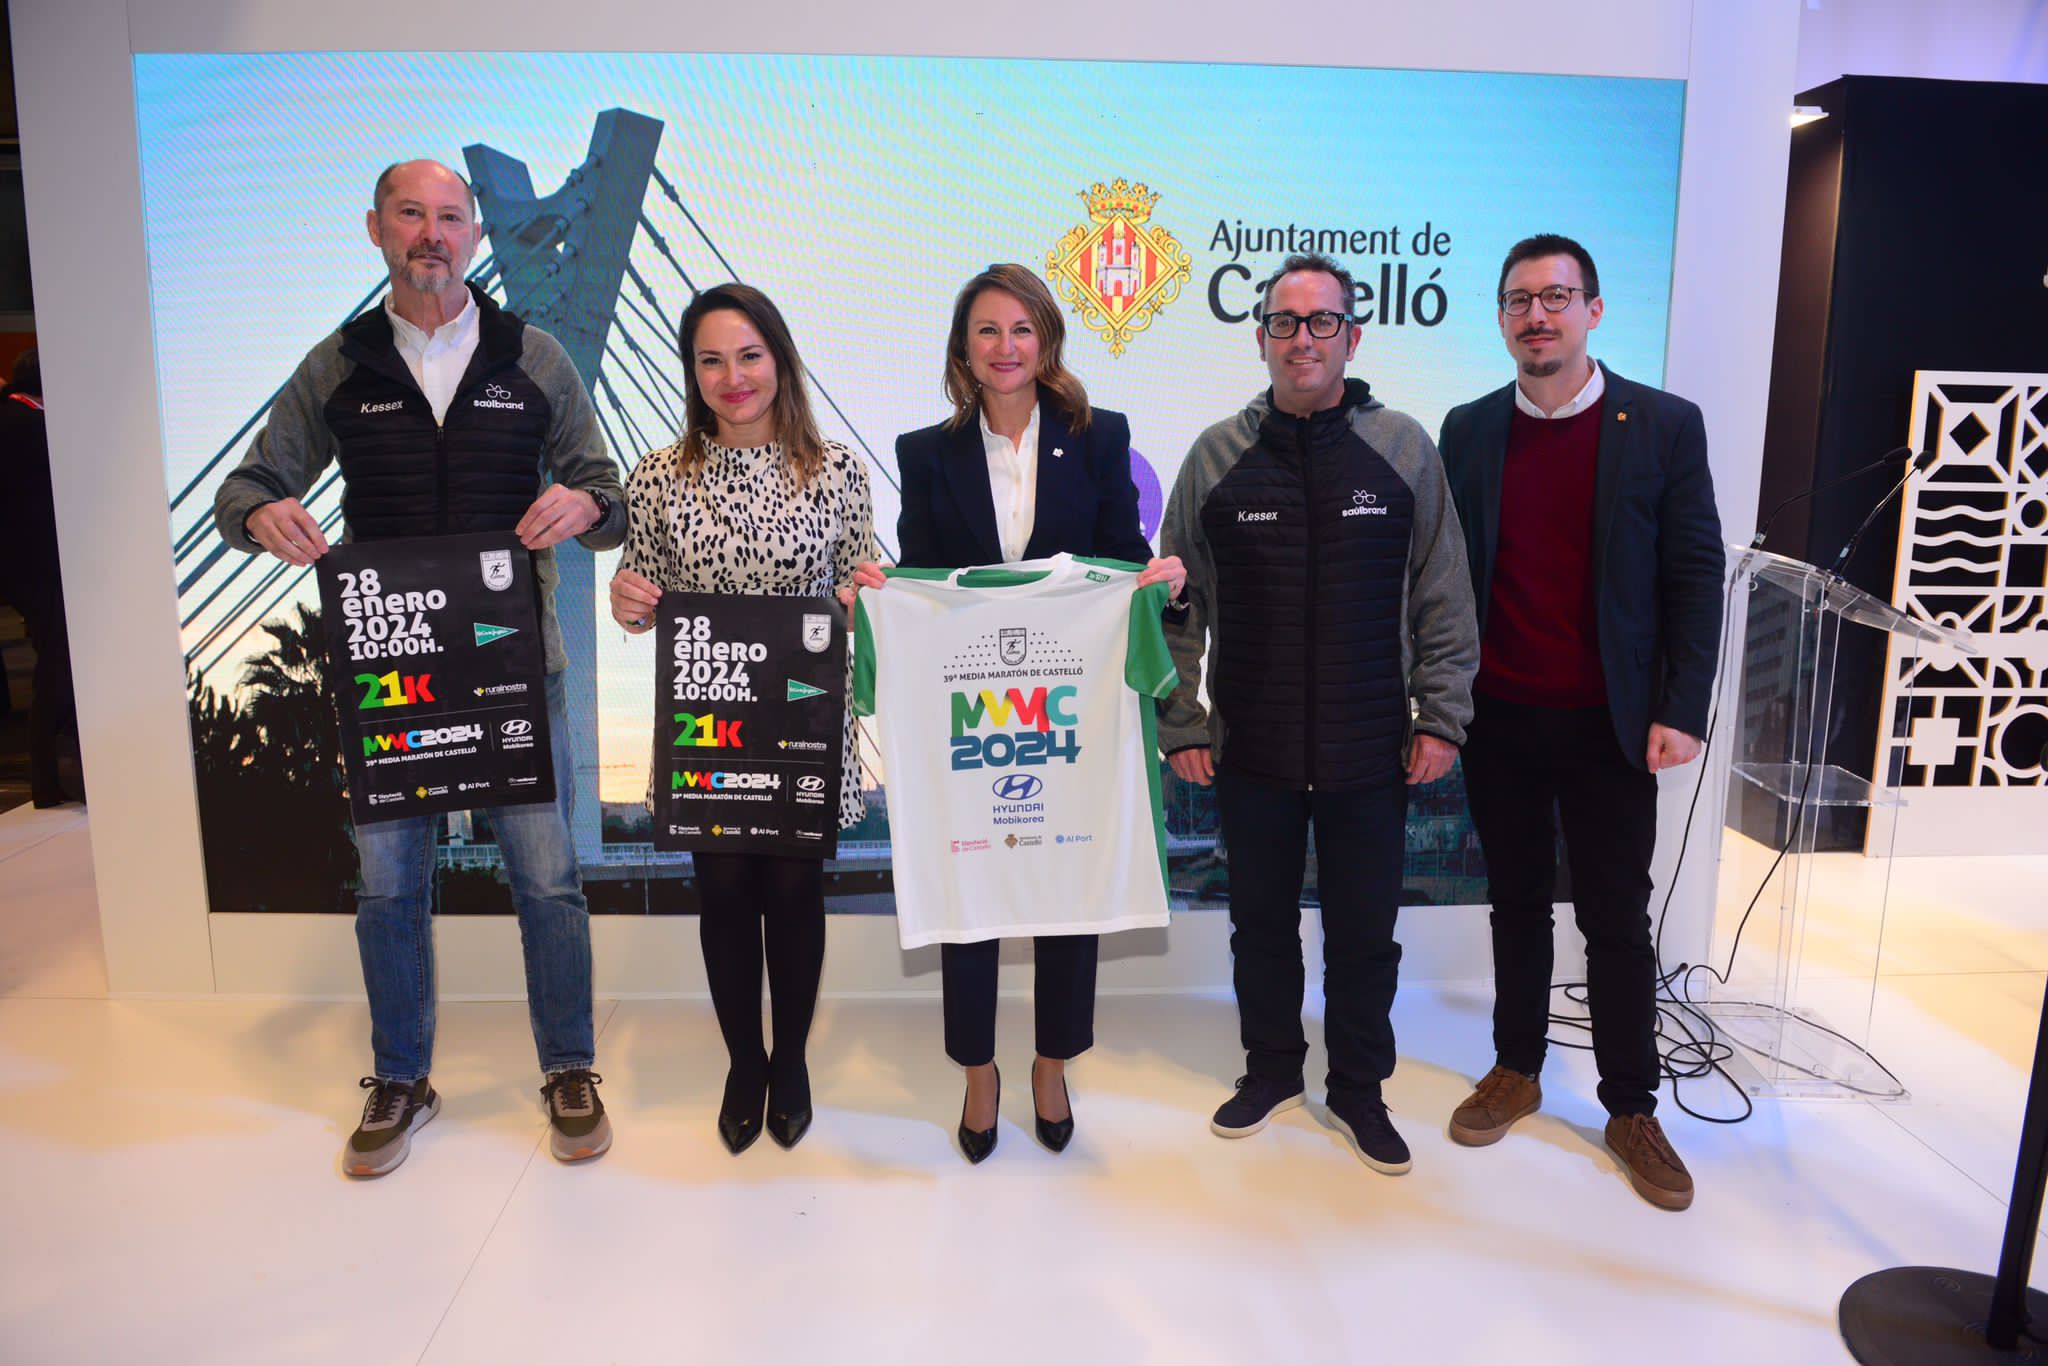 L'Alcaldessa de Castelló presenta la samarreta oficial de la Mitjana Marató de Castelló en Fitur